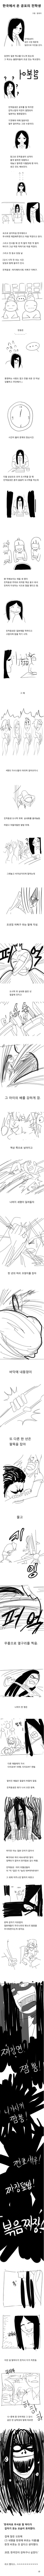 한국에서 온 공포의 전학생 만화